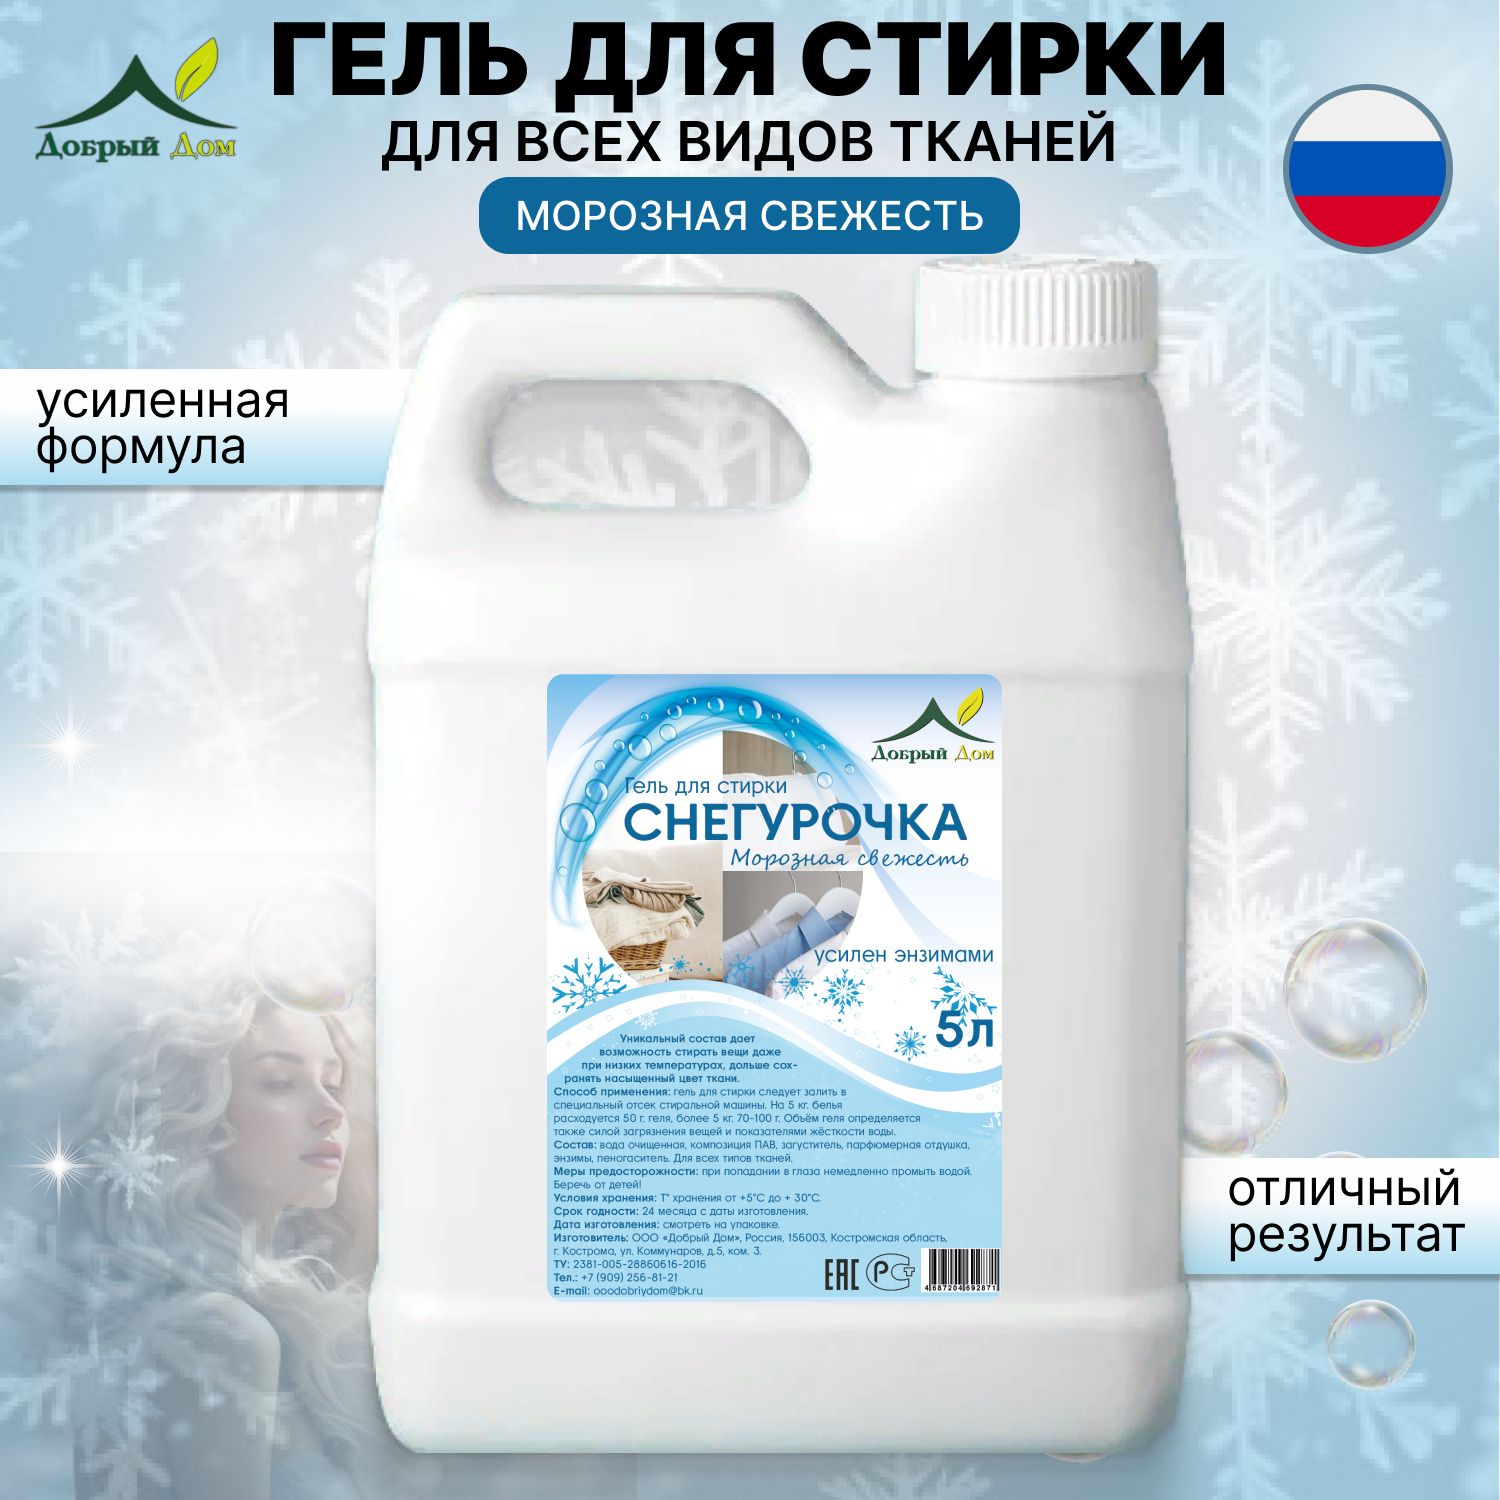 Гель для стирки Добрый дом Снегурочка для всех типов тканей гипоаллергенный, 5 л - купить в Москве, цены на Мегамаркет | 600016771495